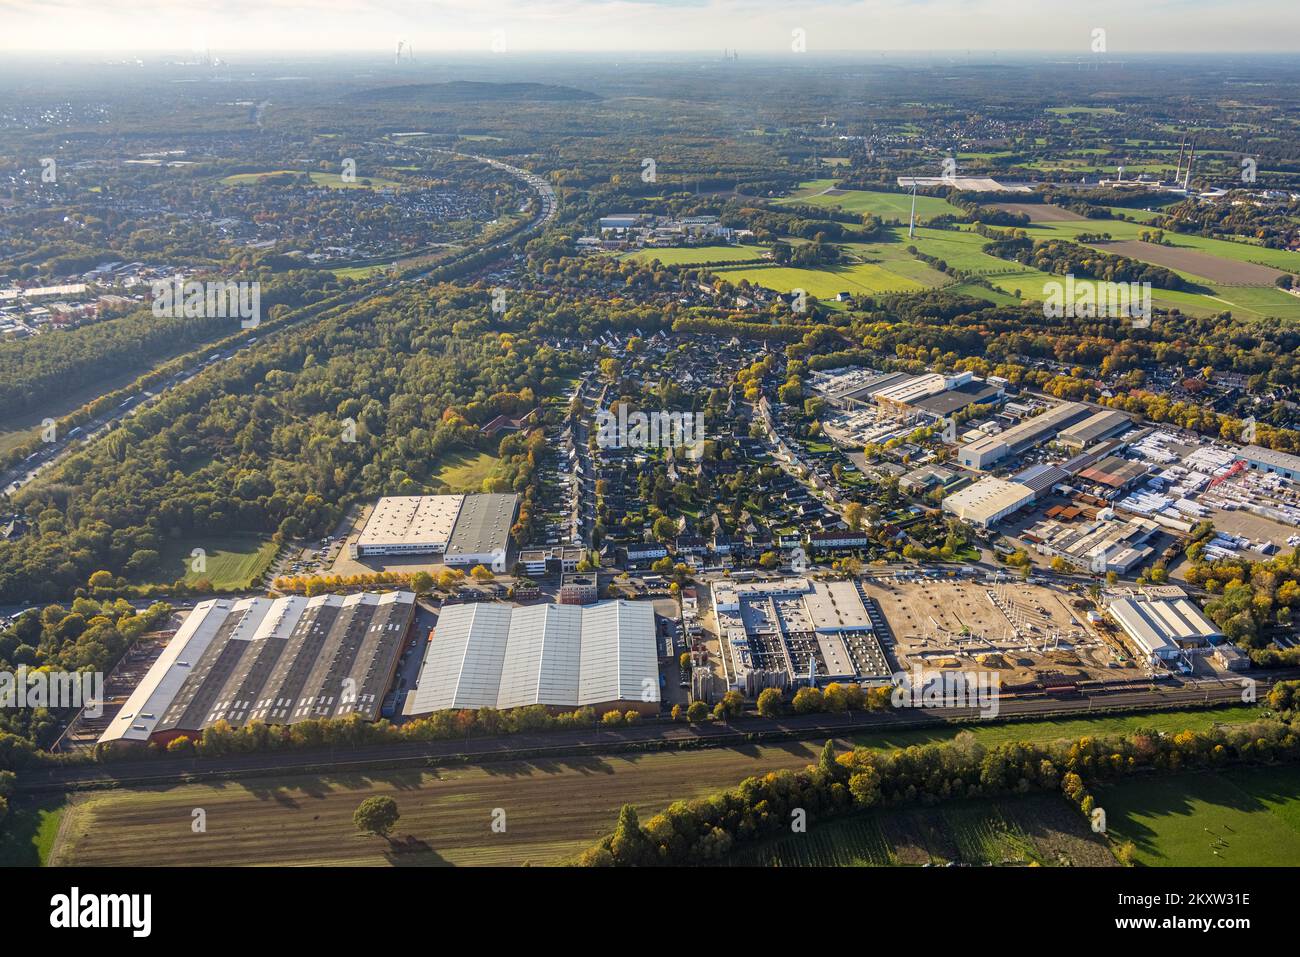 Veduta aerea, parco industriale Ellinghorst, ex edificio amministrativo di Döllken / Surteco, settore siderurgico Salzgitter Mannesmann, area di costruzione aperta Foto Stock